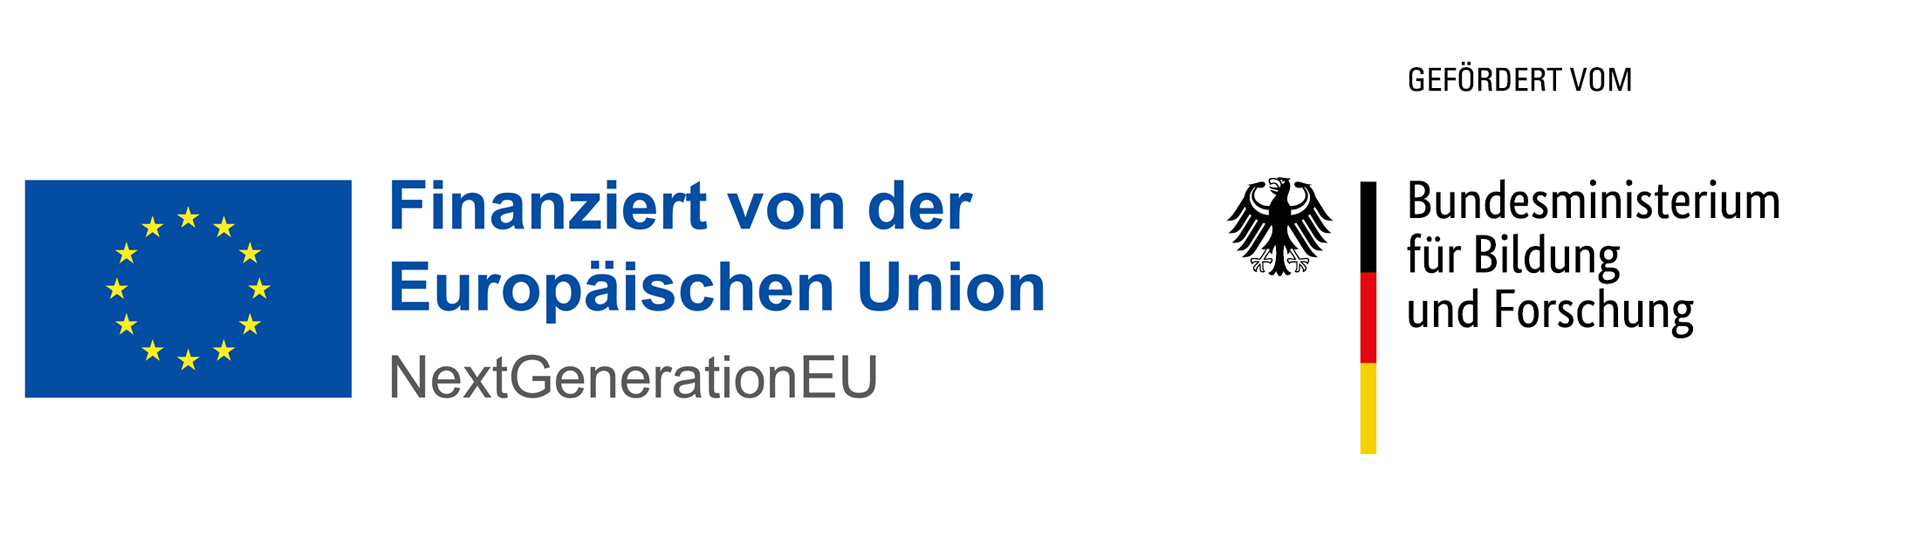 Europaflagge und Bundesadler, daneben die Texte "Finanziert von der Europäischen Union" und "Gefördert vom Bundesministerium für Bildung und Forschung"